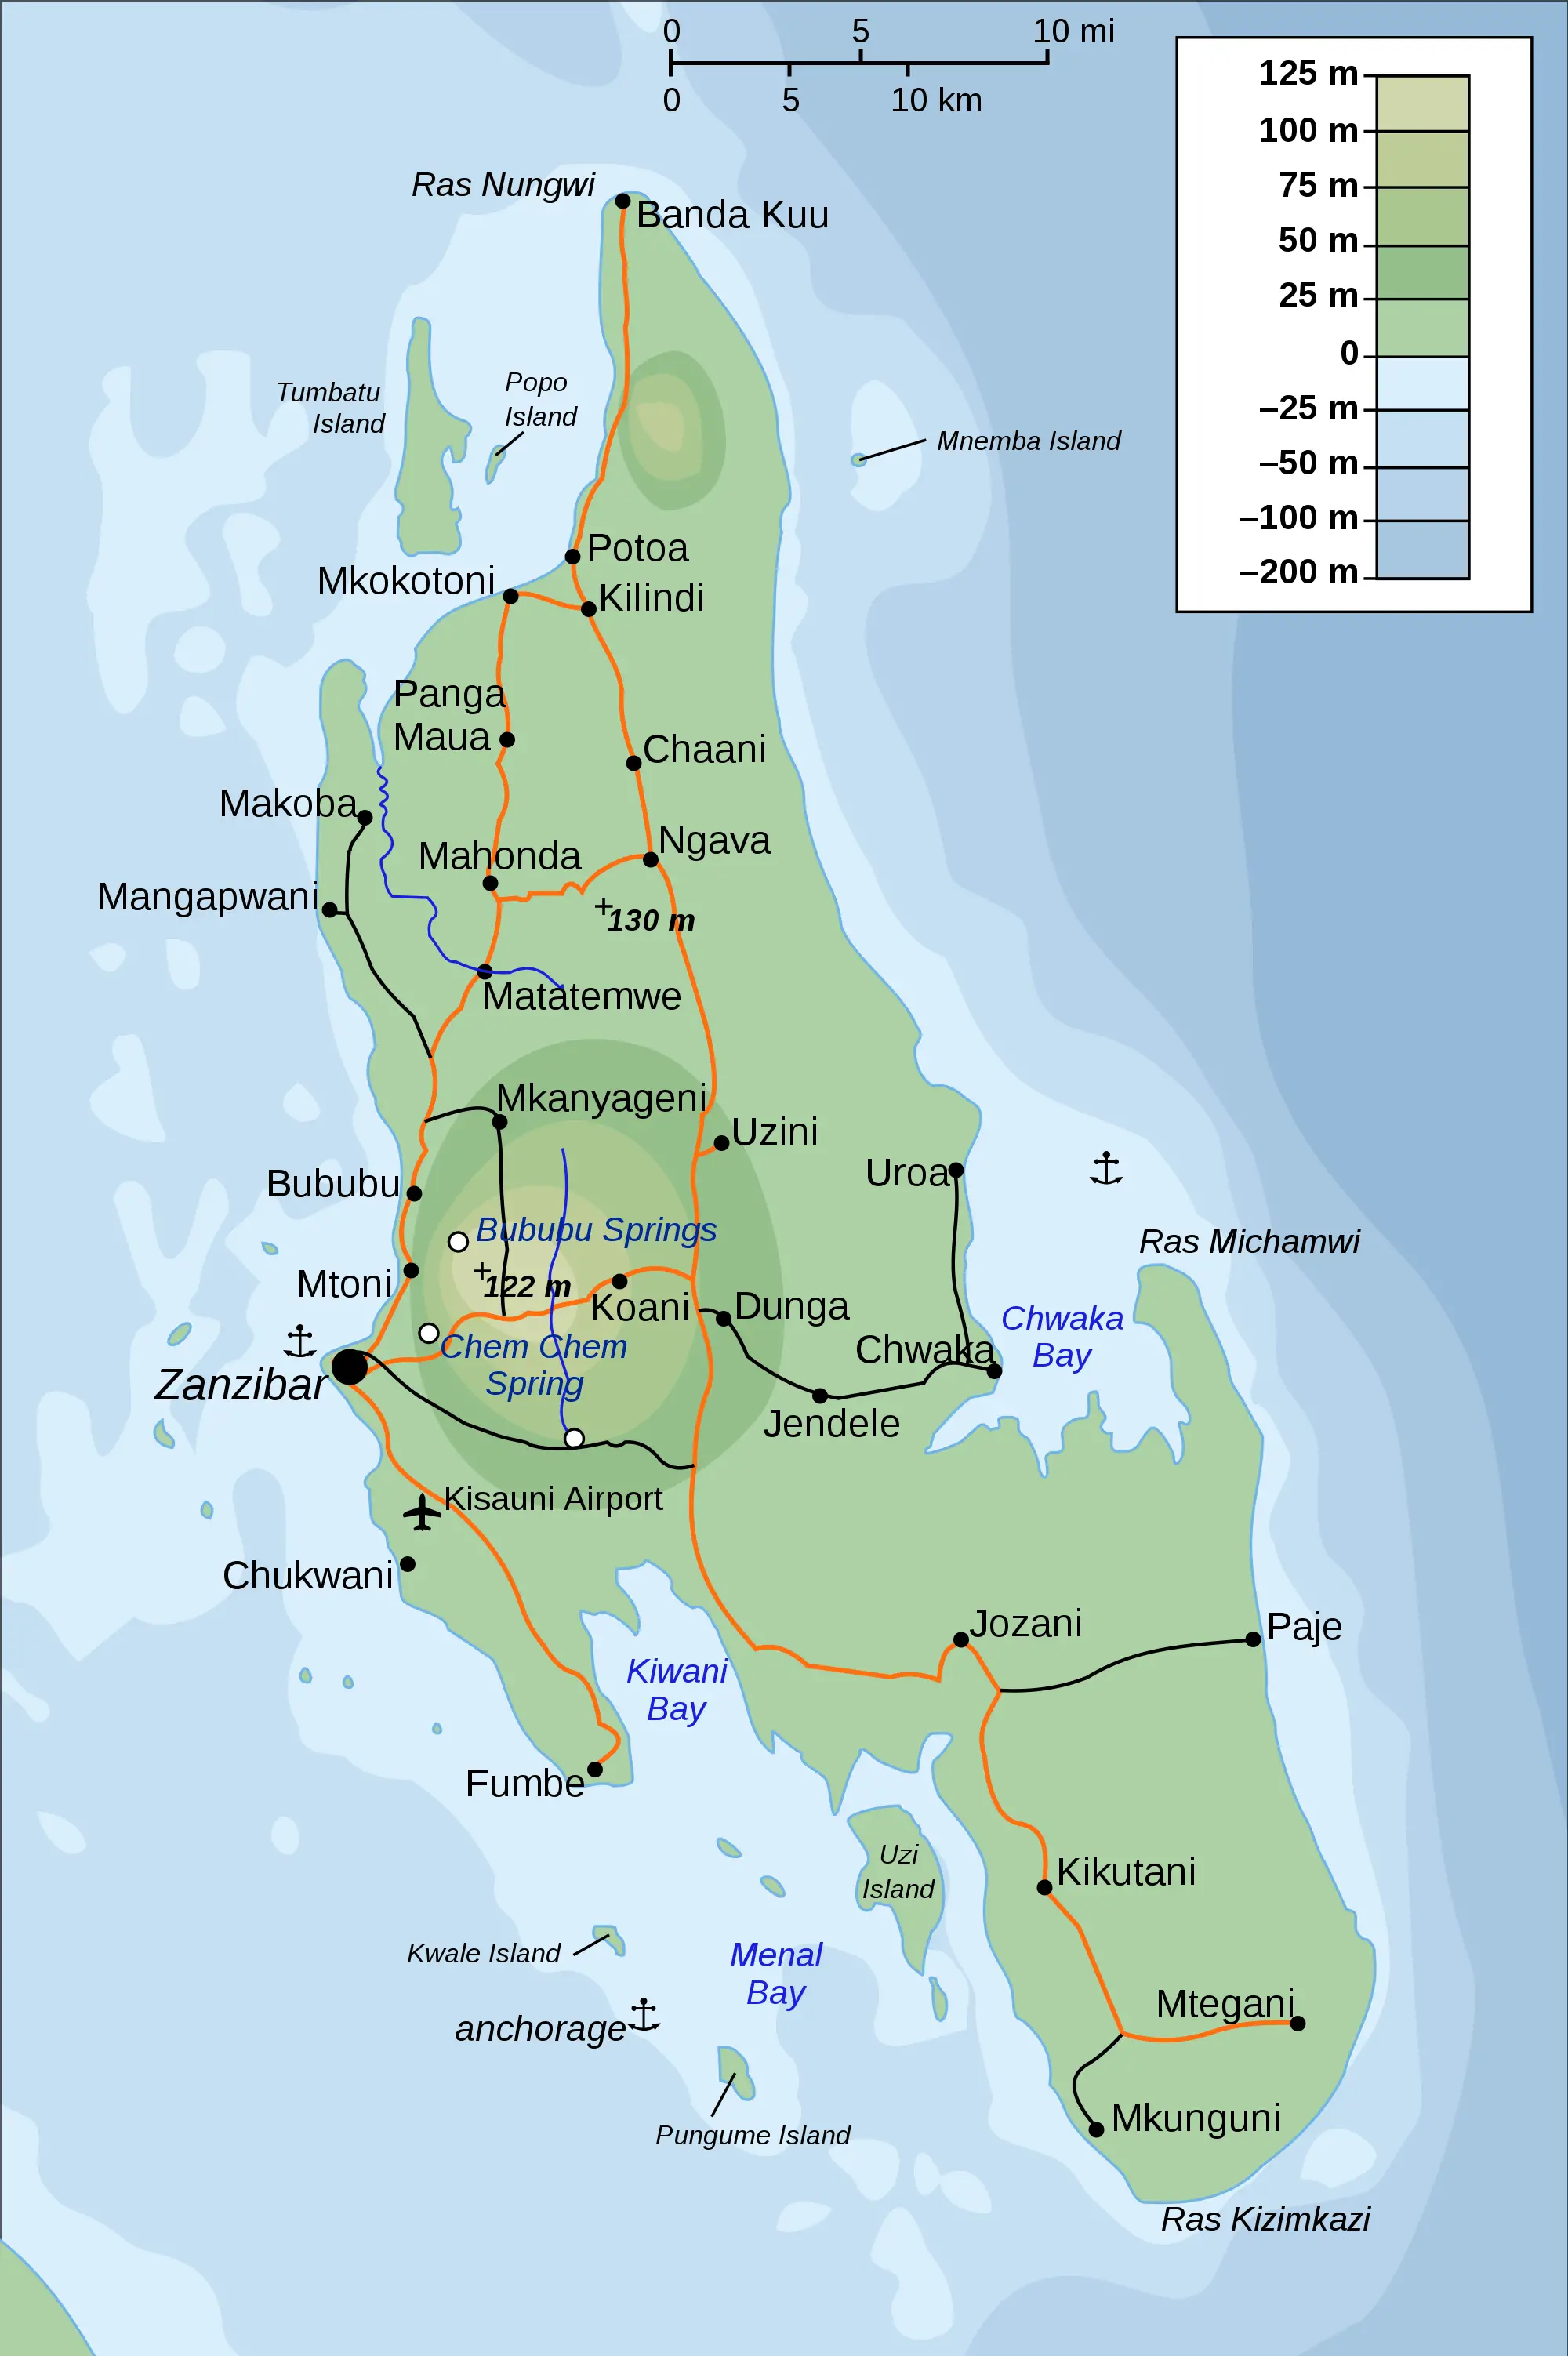 Topographic Map of Zanzibar